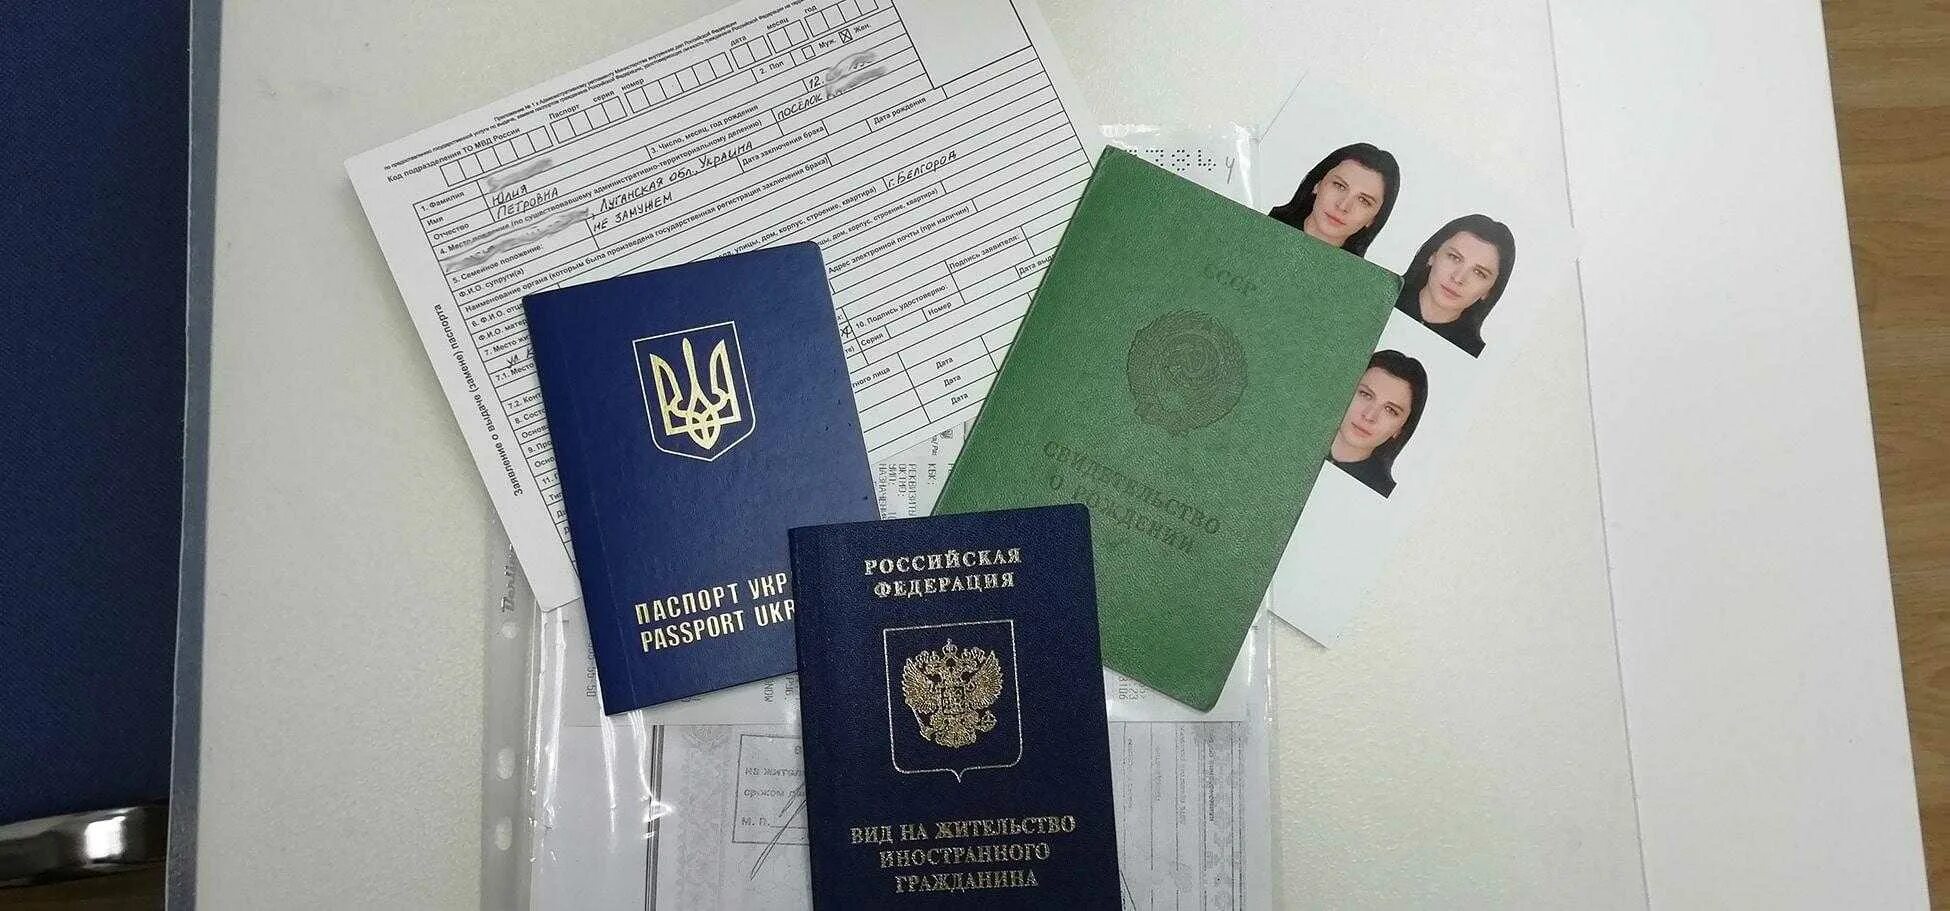 Получение гражданства рф для казахстана. Вид на жительство. Вид на жительство РФ. ВНЖ документ. Вид на жительство иностранного гражданина.